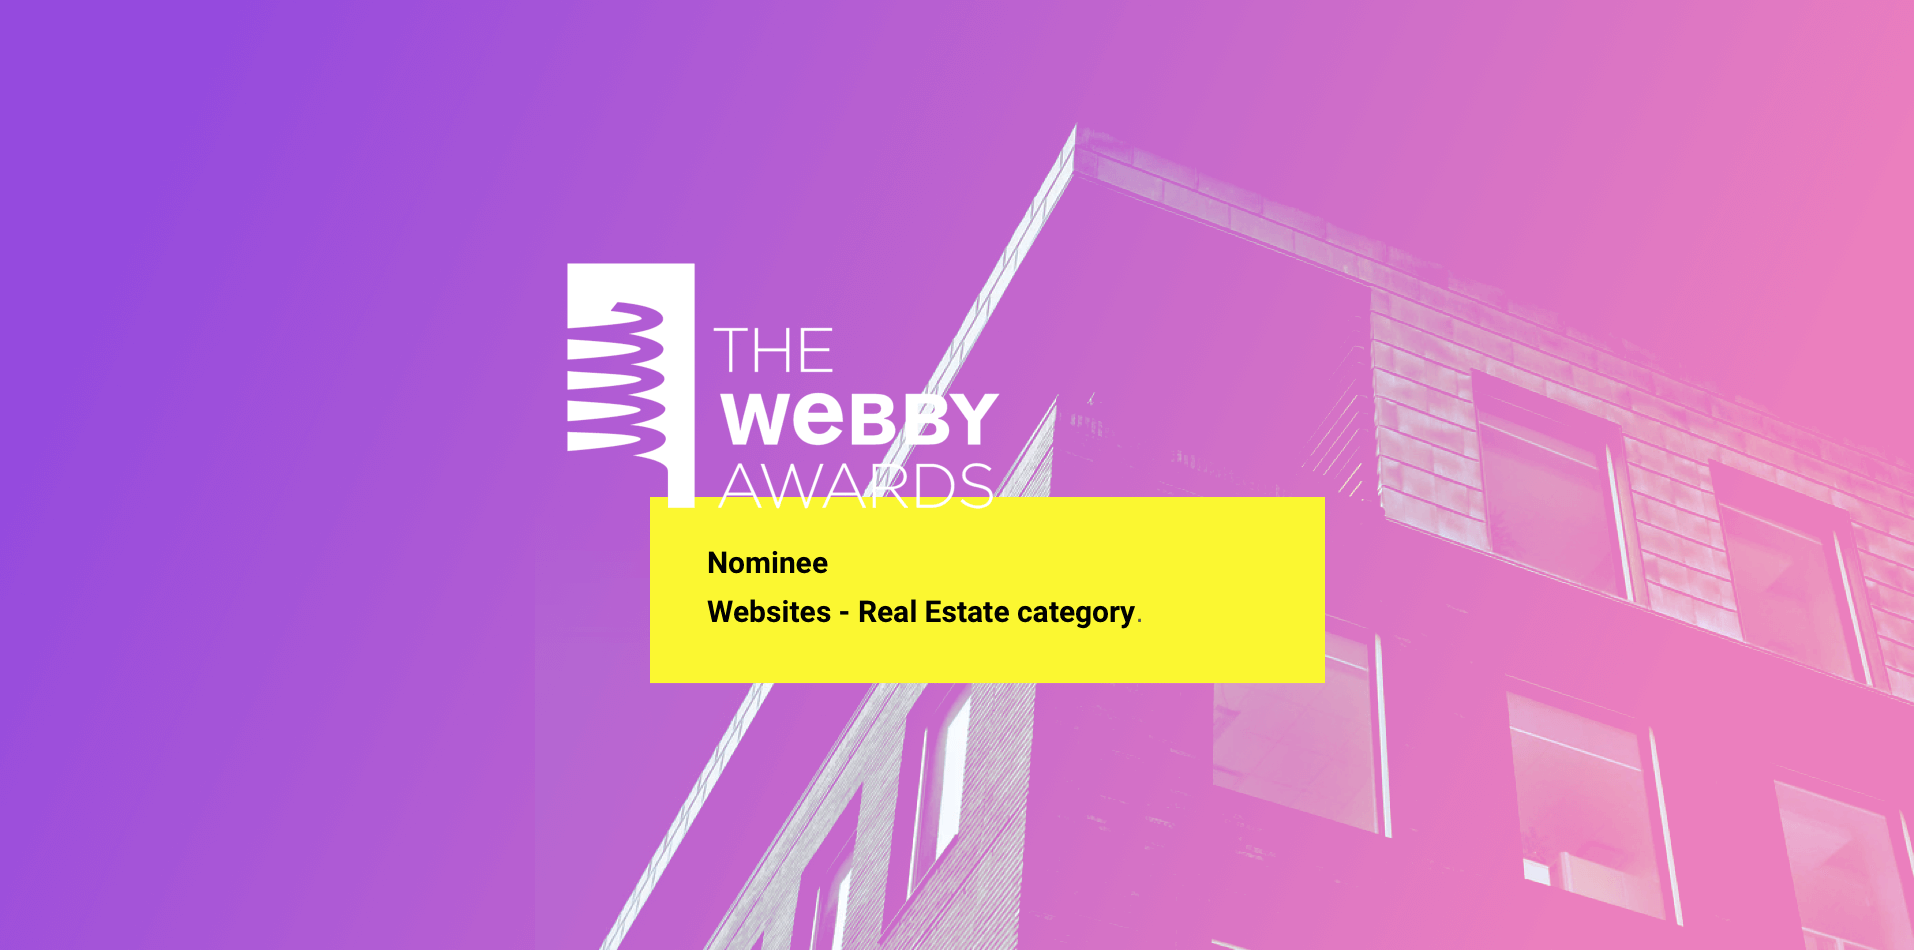 Webby-Awards-Blog-image-02